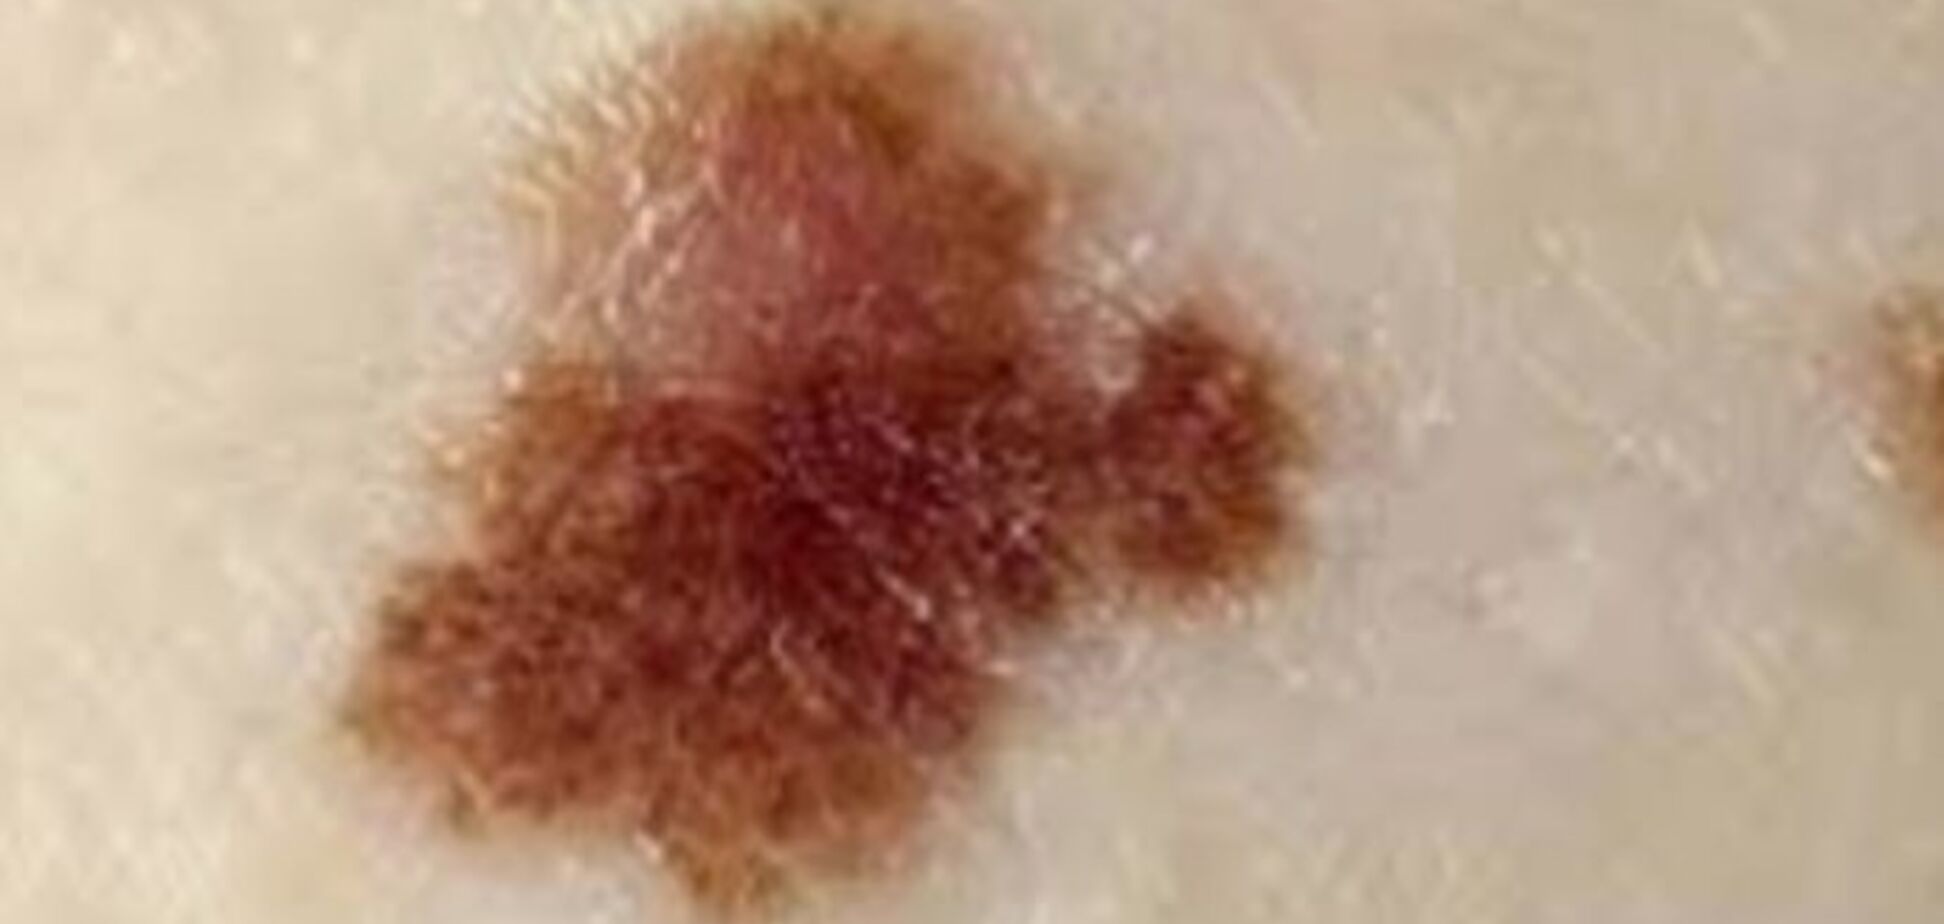 Как отличить родинки и веснушки от рака кожи: названы главные признаки  